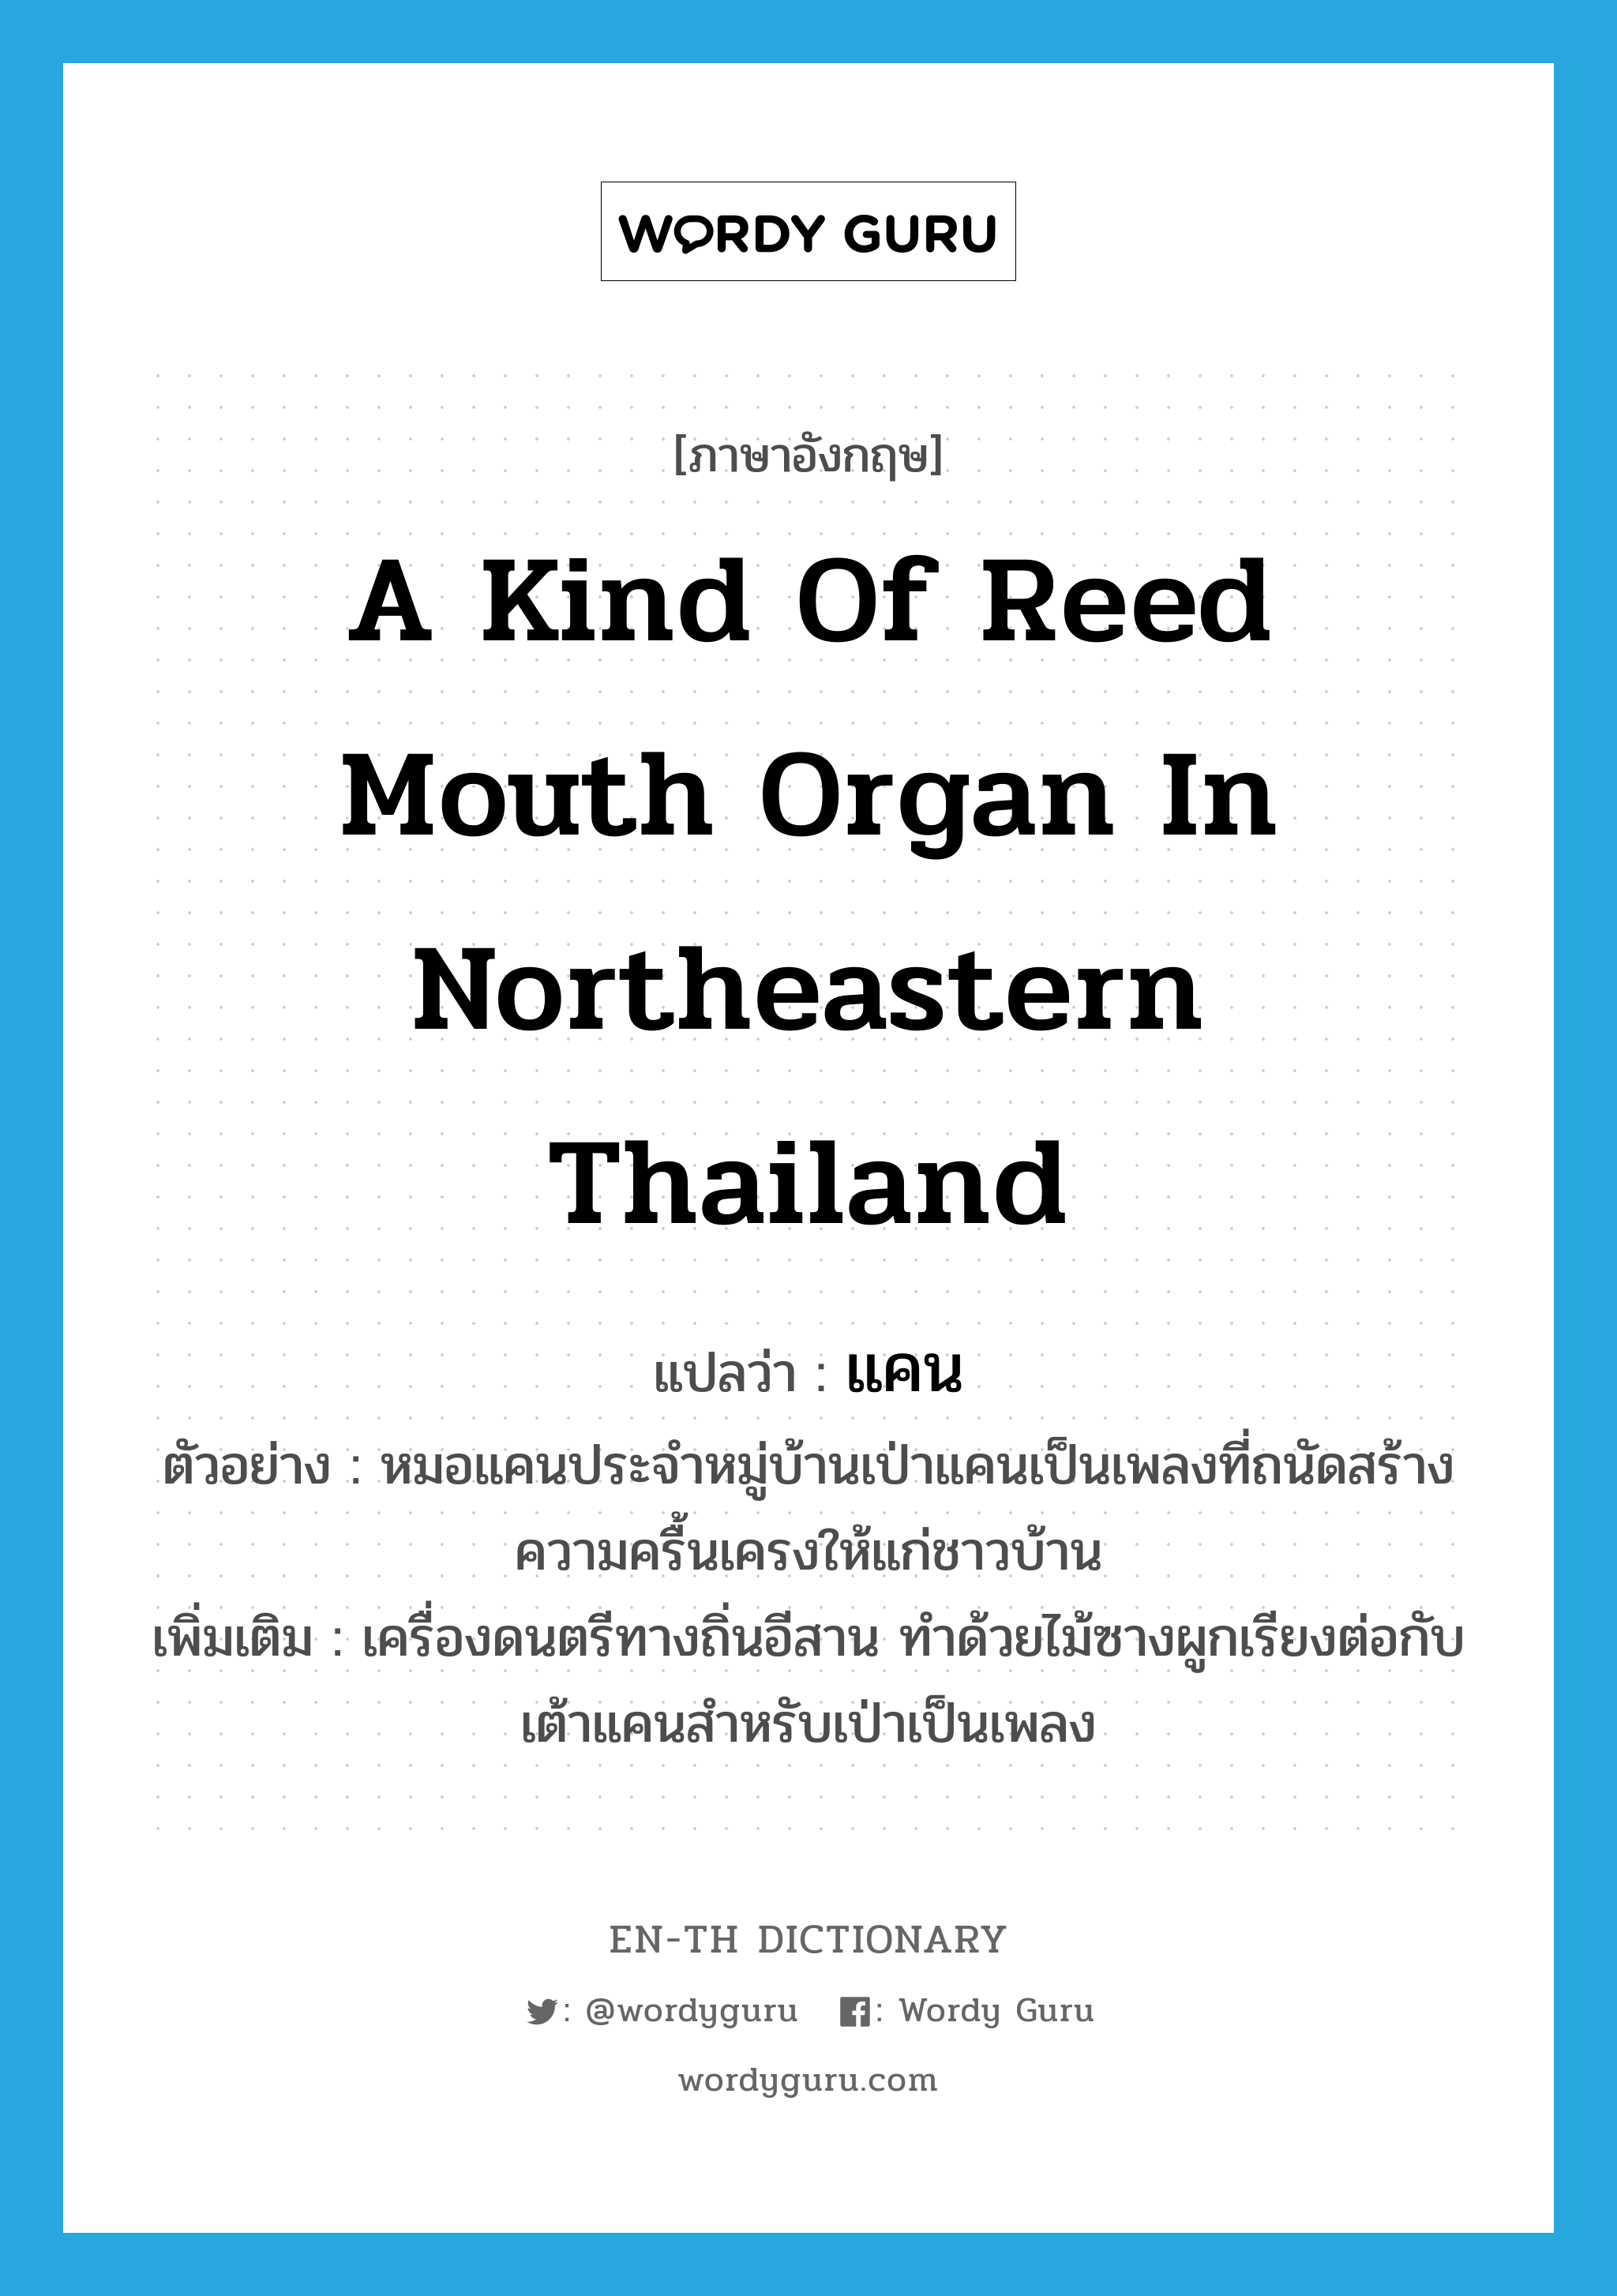 แคน ภาษาอังกฤษ?, คำศัพท์ภาษาอังกฤษ แคน แปลว่า a kind of reed mouth organ in northeastern Thailand ประเภท N ตัวอย่าง หมอแคนประจำหมู่บ้านเป่าแคนเป็นเพลงที่ถนัดสร้างความครื้นเครงให้แก่ชาวบ้าน เพิ่มเติม เครื่องดนตรีทางถิ่นอีสาน ทำด้วยไม้ซางผูกเรียงต่อกับเต้าแคนสำหรับเป่าเป็นเพลง หมวด N